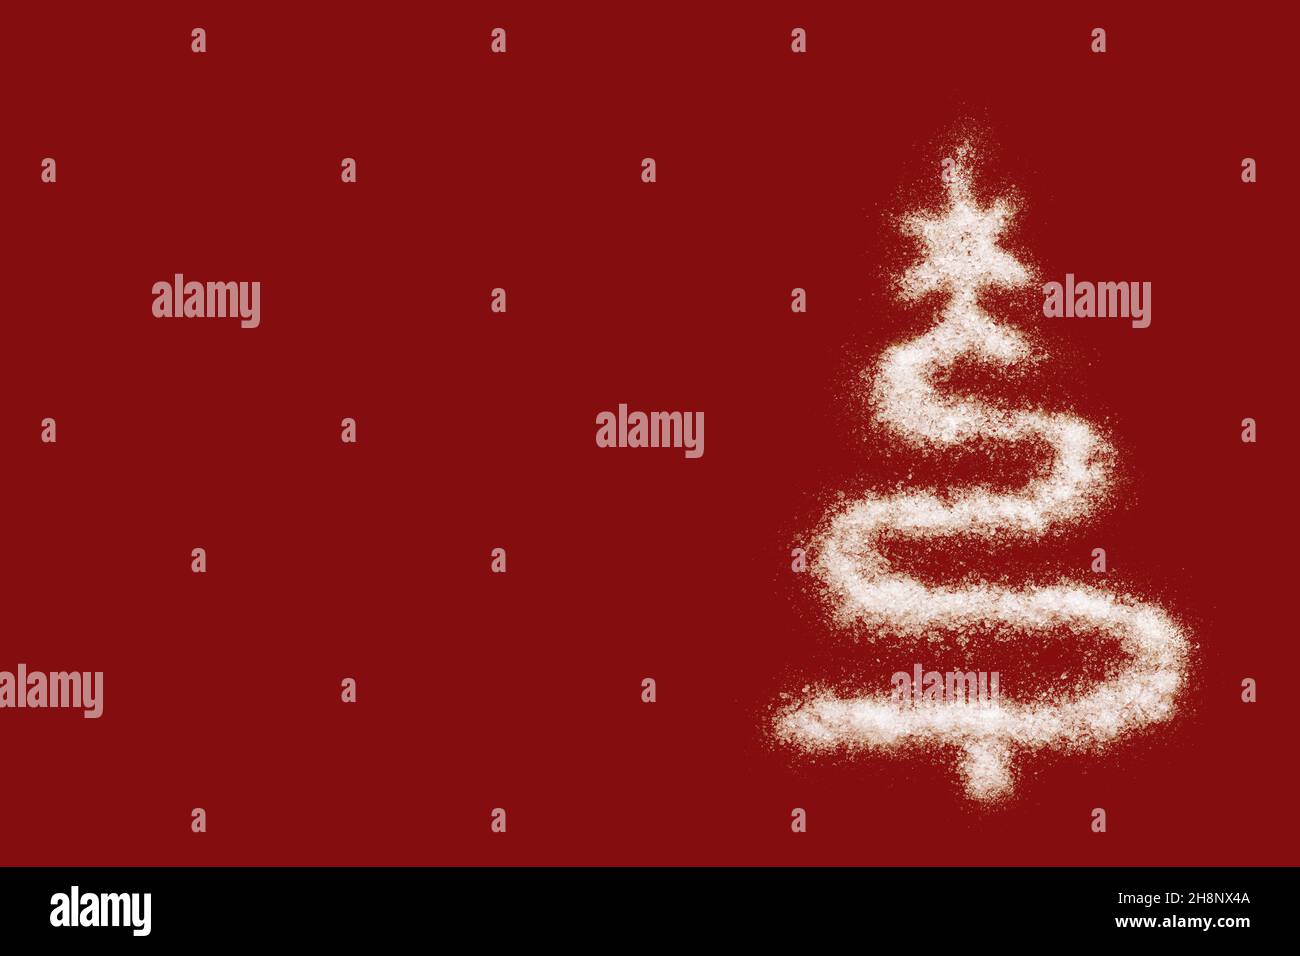 Frohe Weihnachten und ein Frohes neues Jahr. Weihnachtskarte - eine weiße Weihnachtsbaumform aus Salz, wie Schnee, auf einem roten Hintergrund. Minimale Urlaubskonz Stockfoto